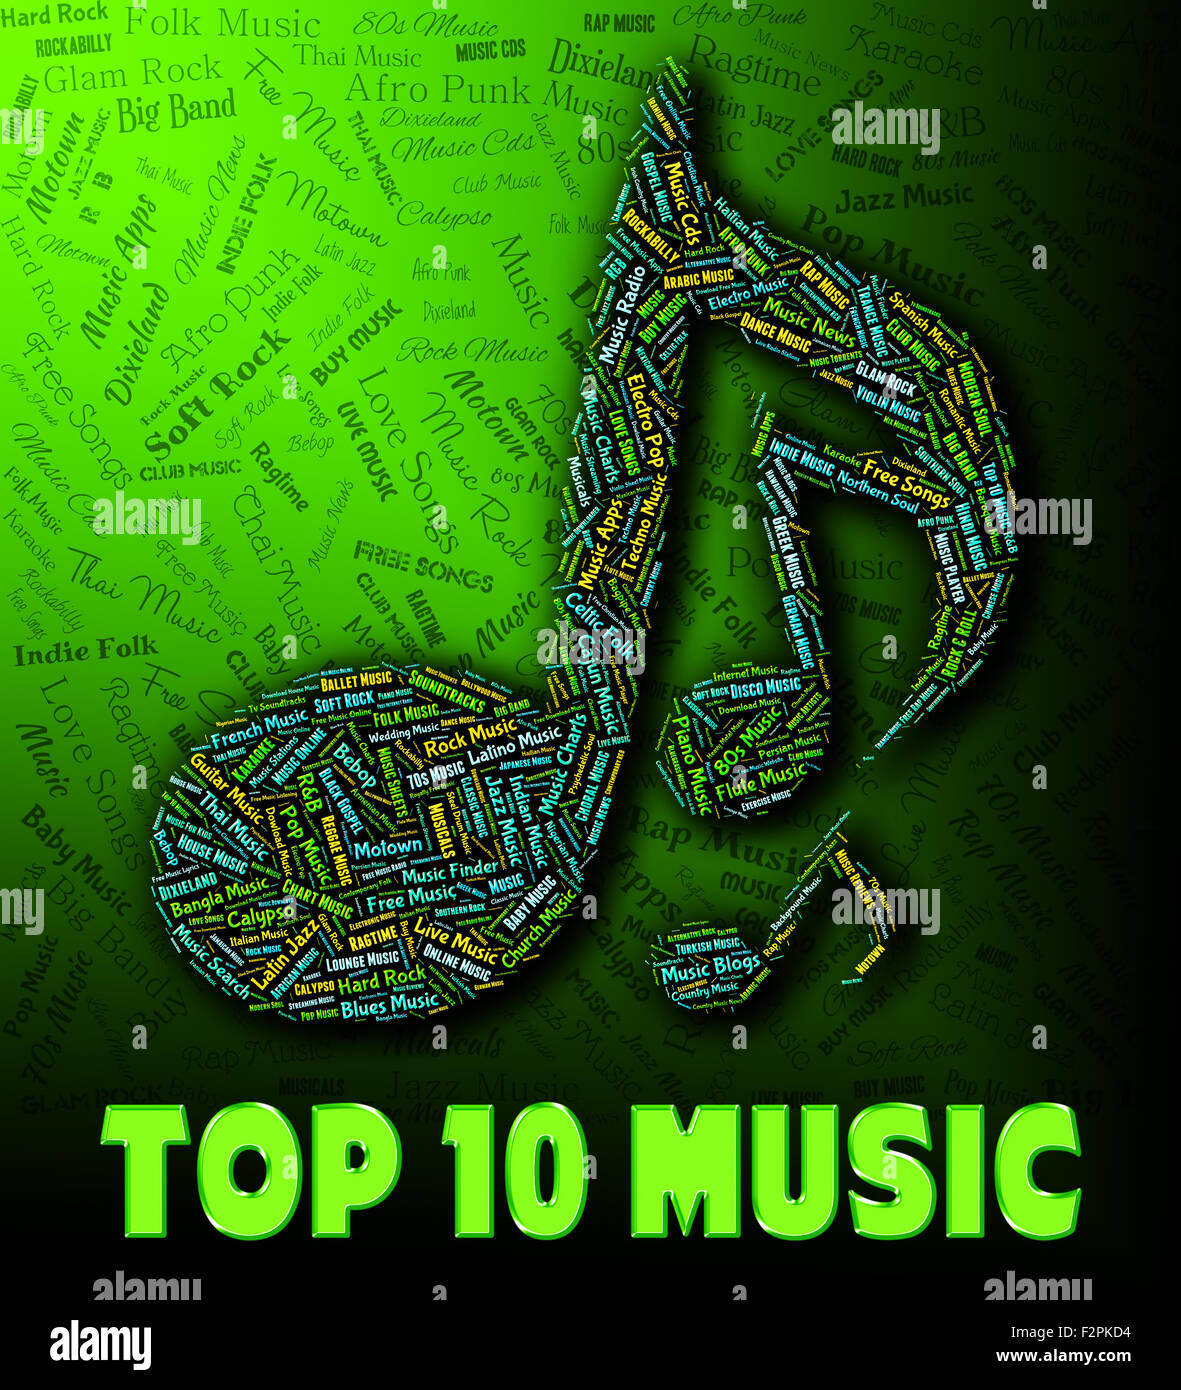 Thai Music Top Chart